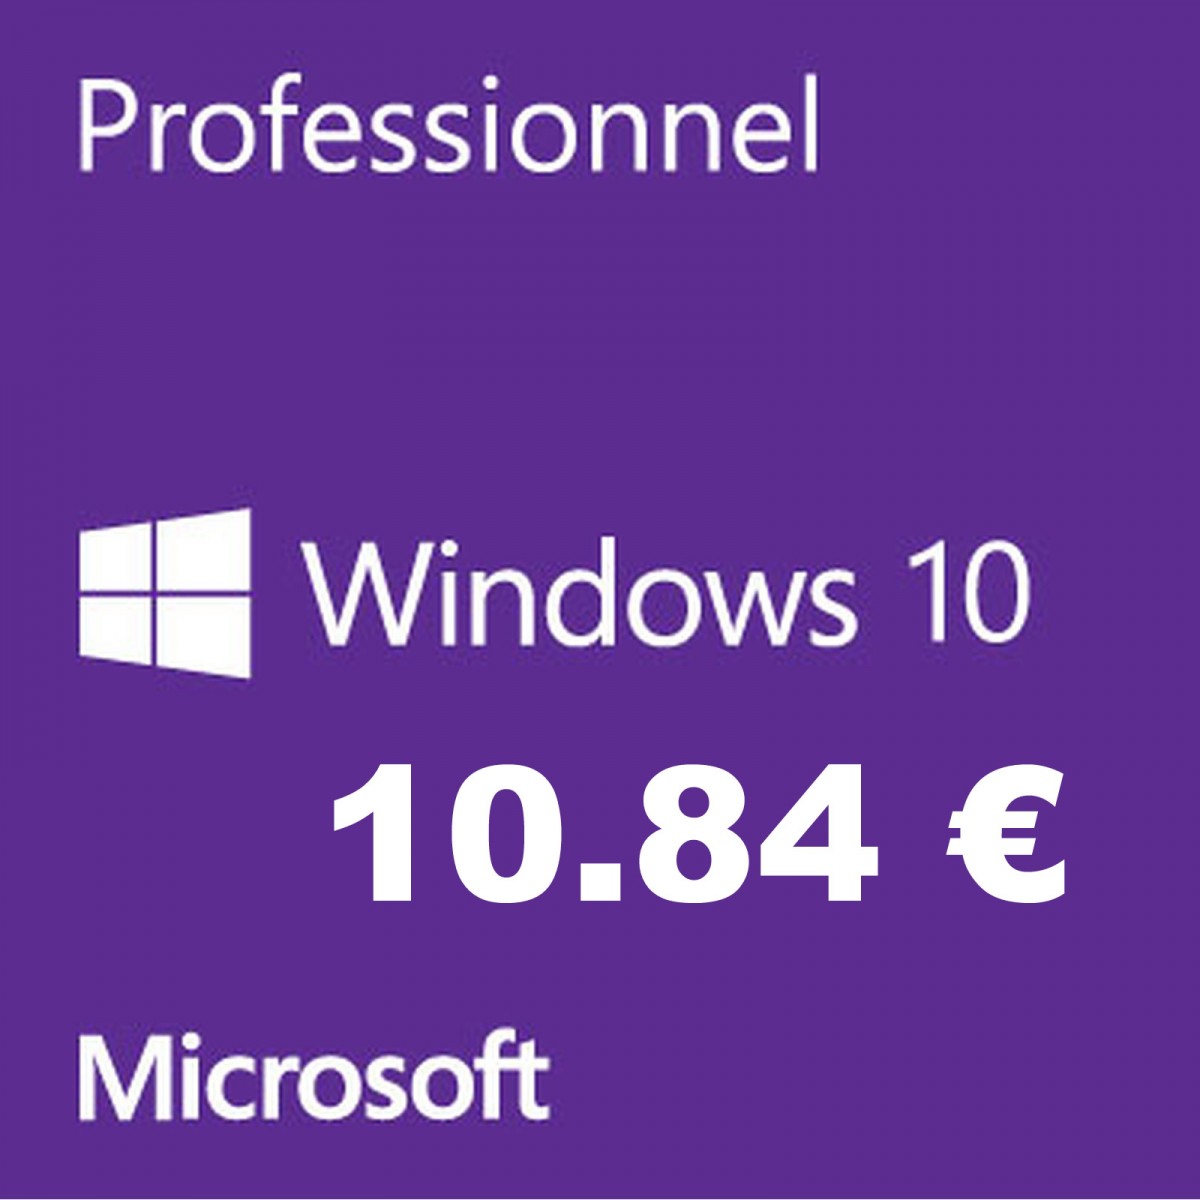 clé-windows-pas-cher licence-windows-pas-cher licence-office-pas-cher microsoft-windows-10-pro-oem office-2019 18-10-2019